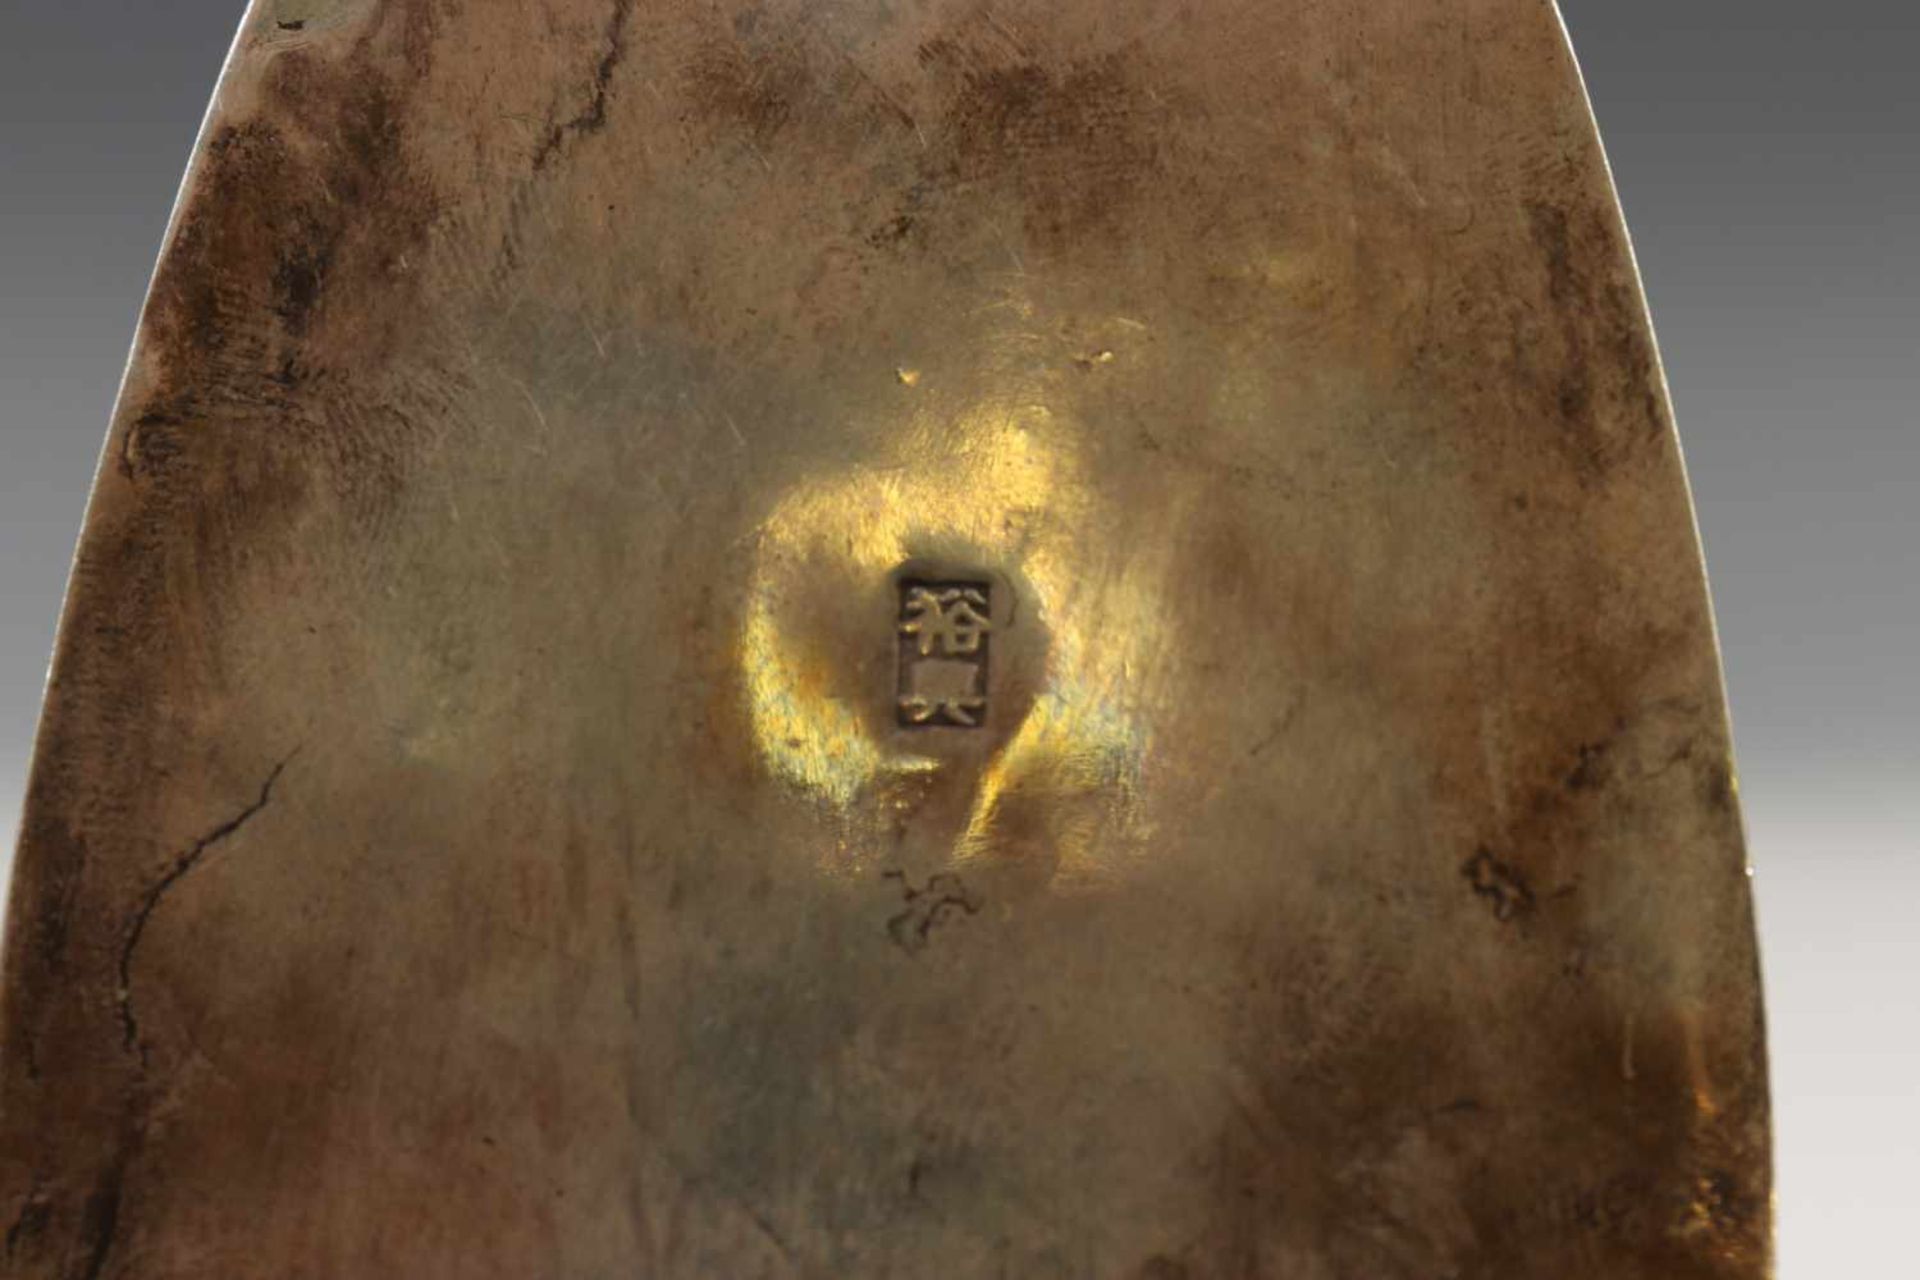 China, wit jadeit ajour pendantin zilveren montering, gekeurd, 12 x 6,5 cm. [1]300 - Bild 4 aus 4